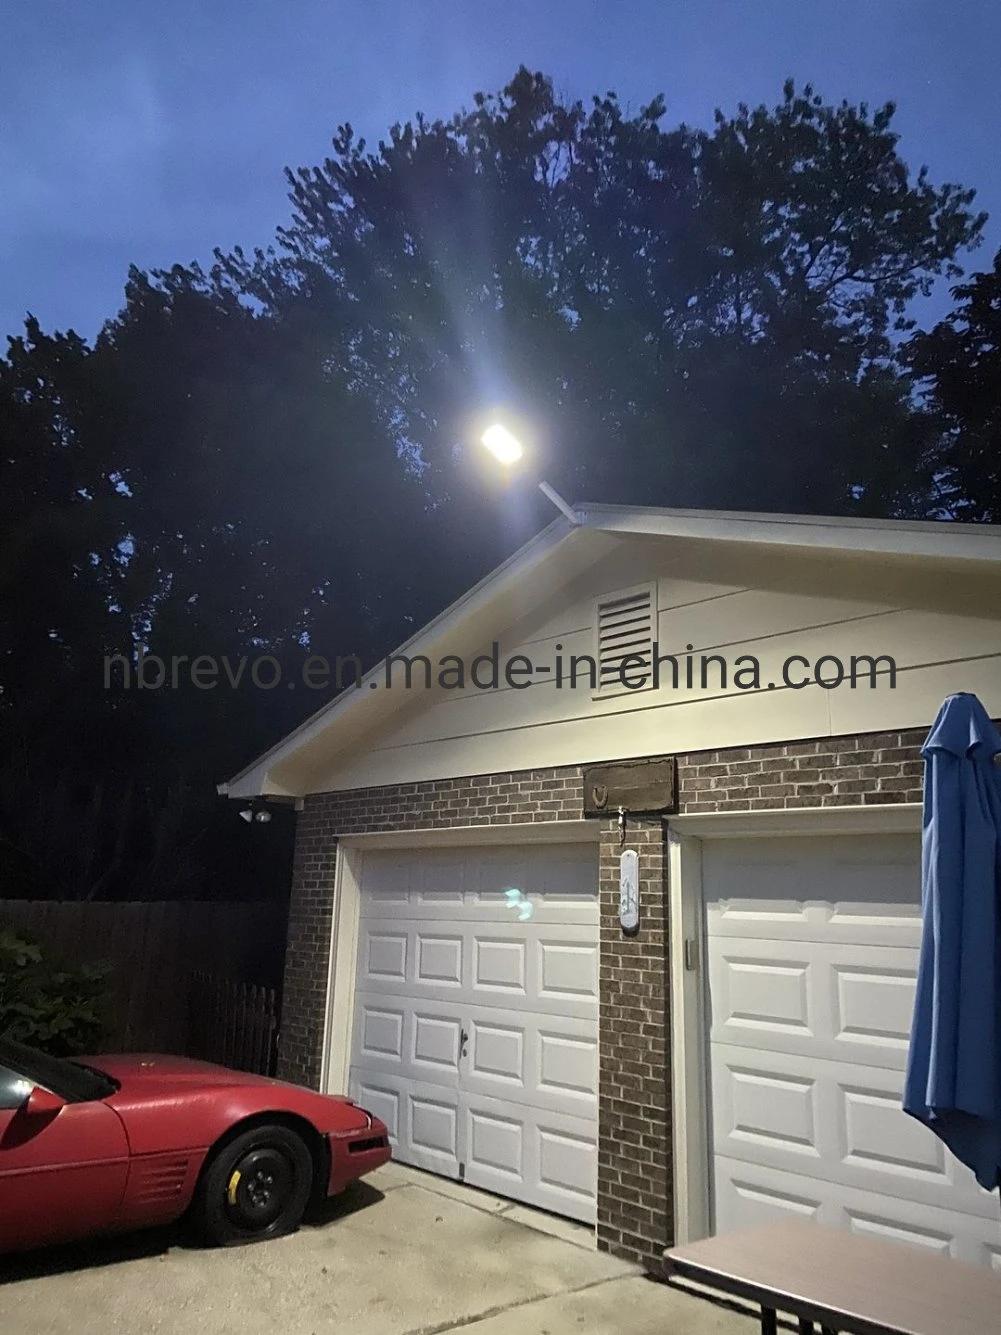 New Longlife LED Solar Street Light for Outdoor Garden Road